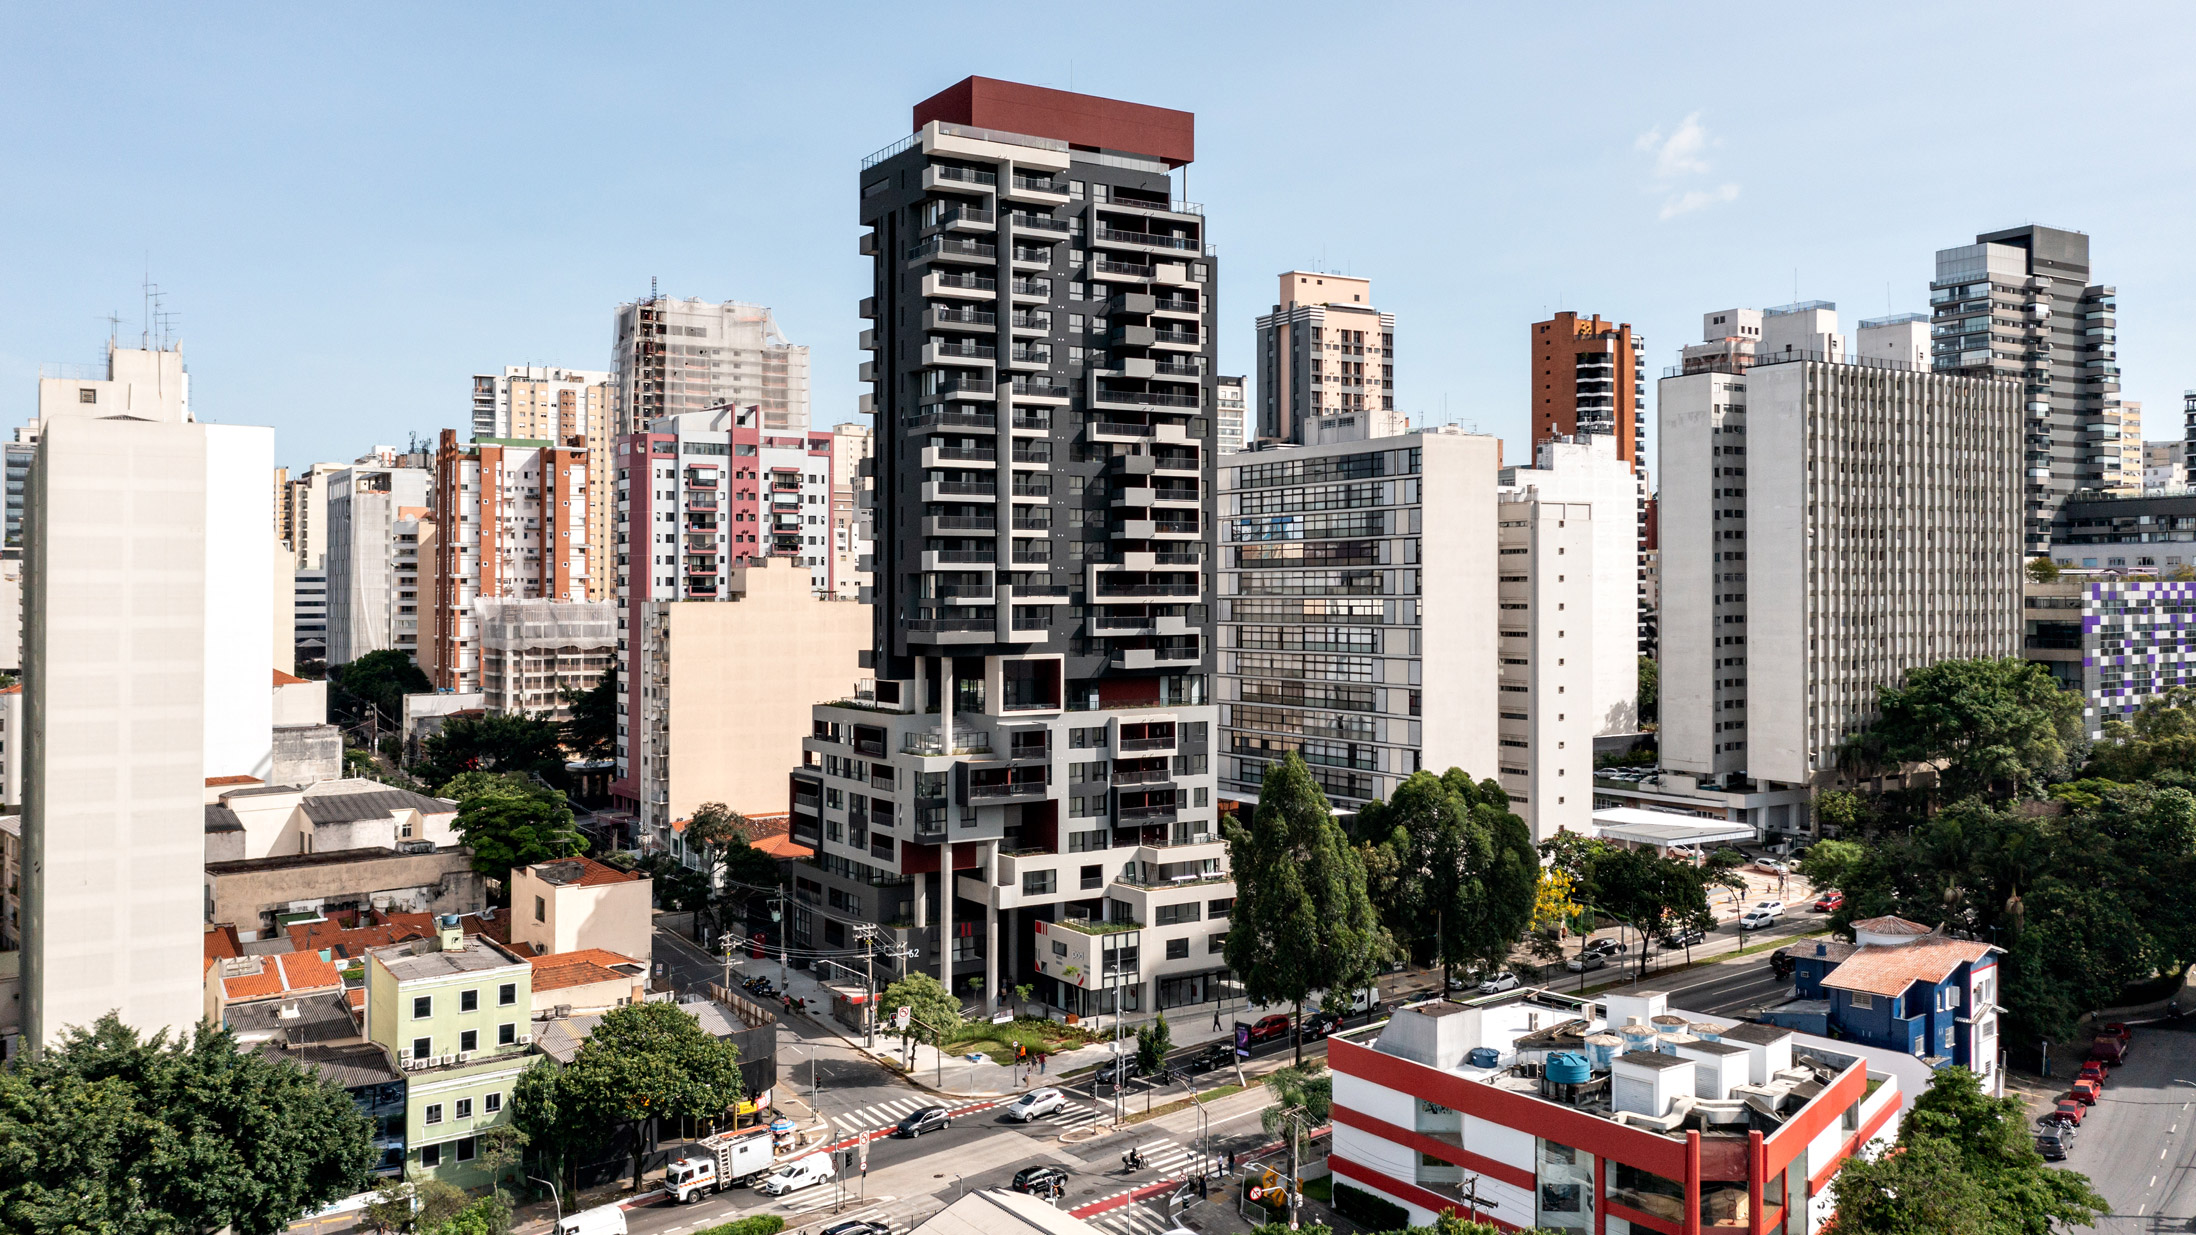 São Paulo - The Skyscraper Center